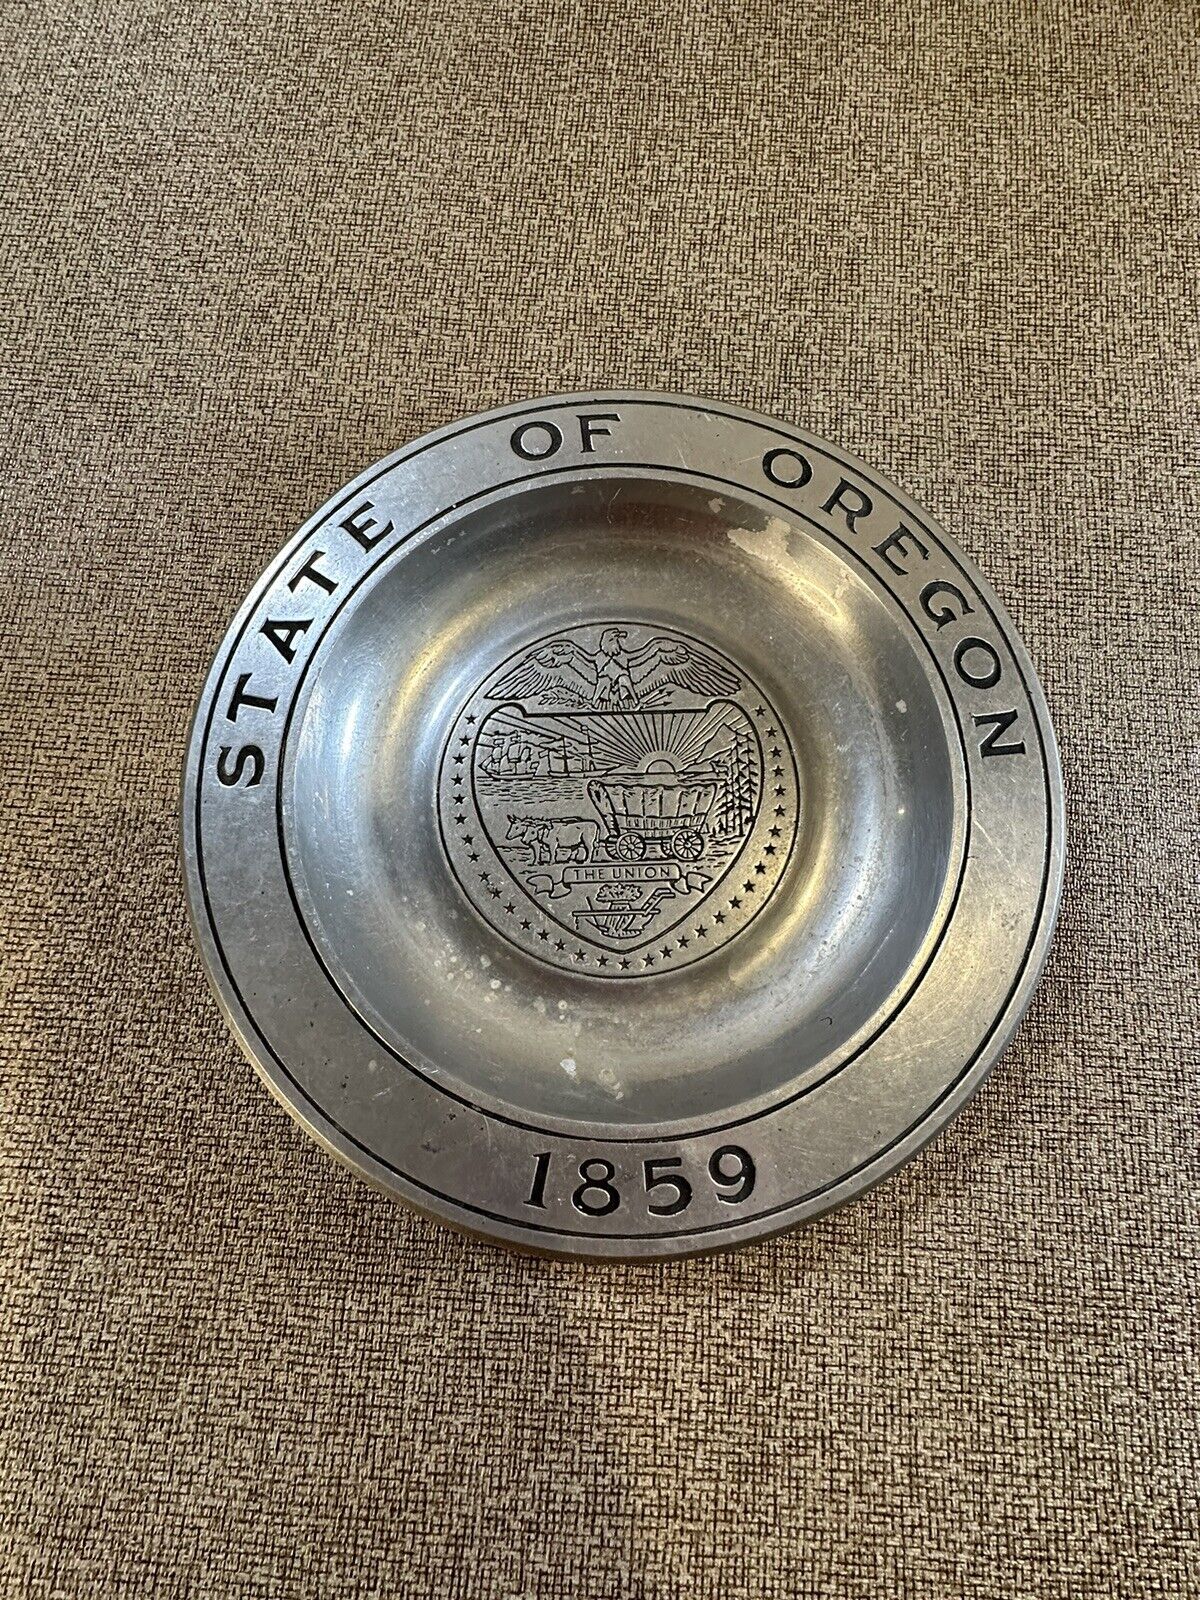 Brushed Pewter Milmetal Plate State Of Oregon Seal Statehood Commemorative 1859